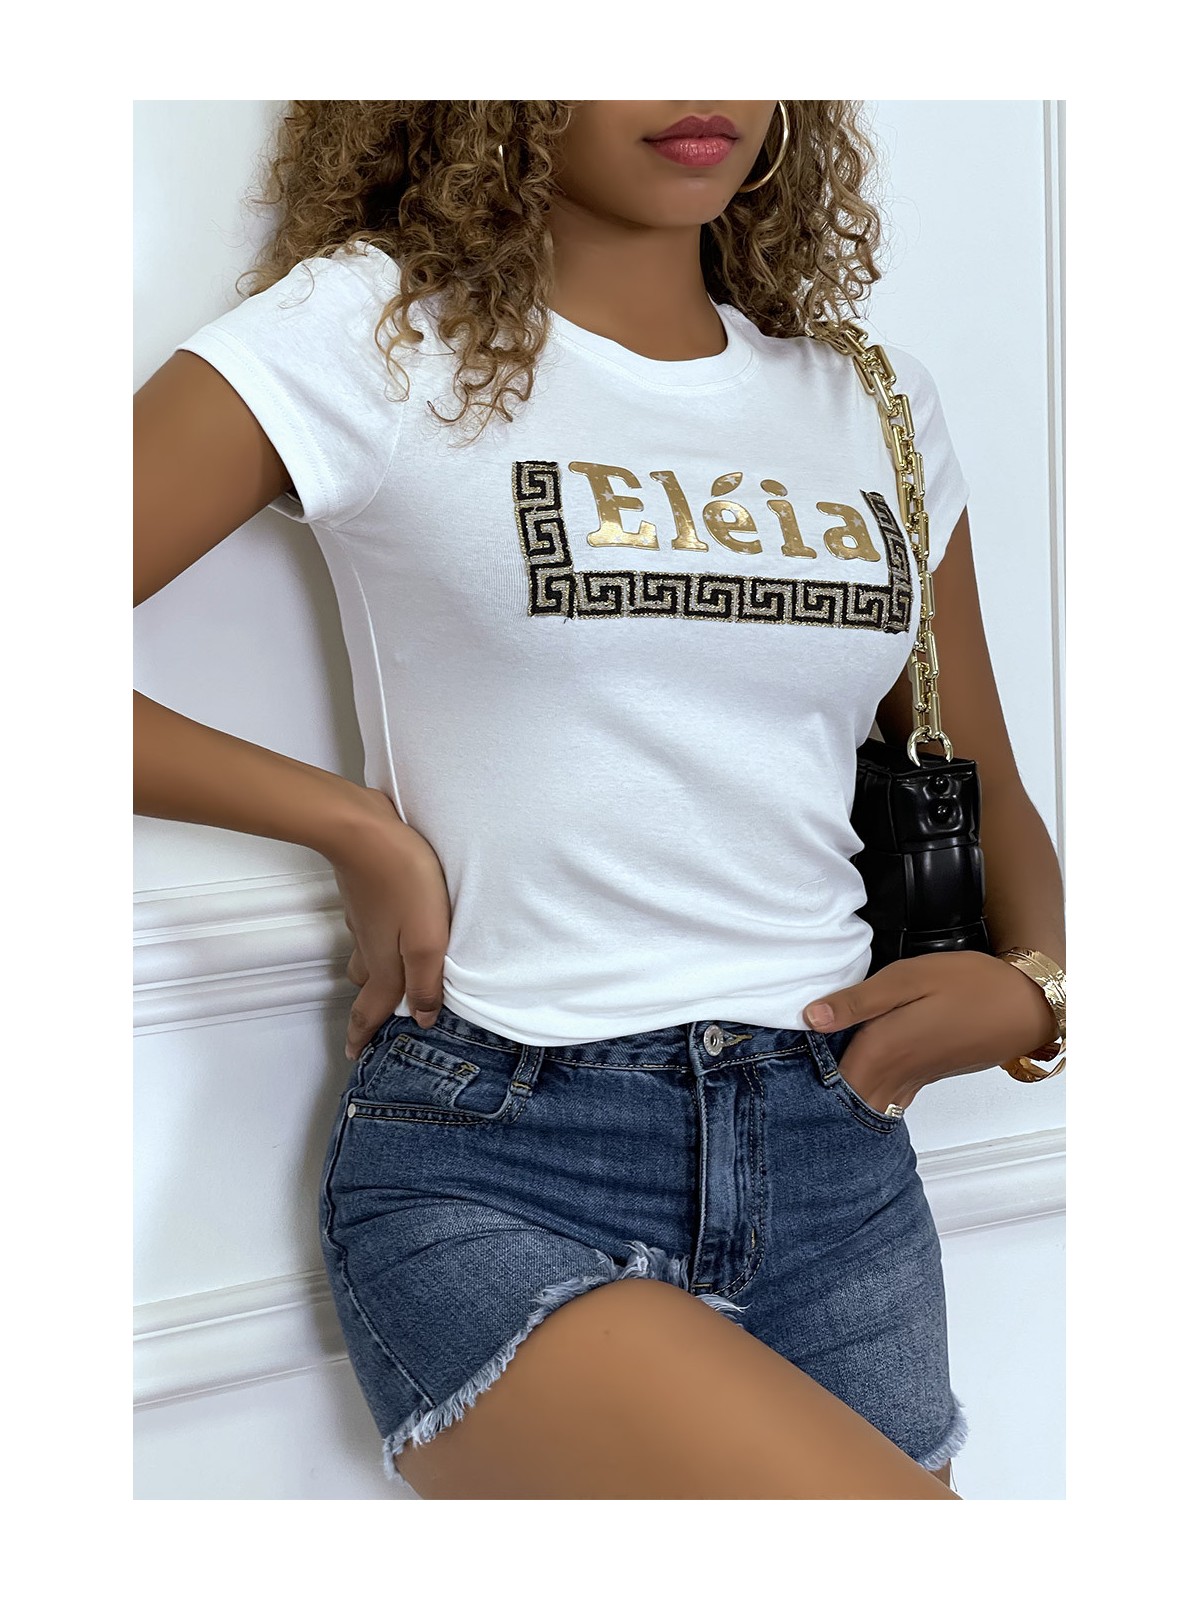 T-shirt blanc manches courtes, avec écriture dorée "Eléia" et imprimés - 3